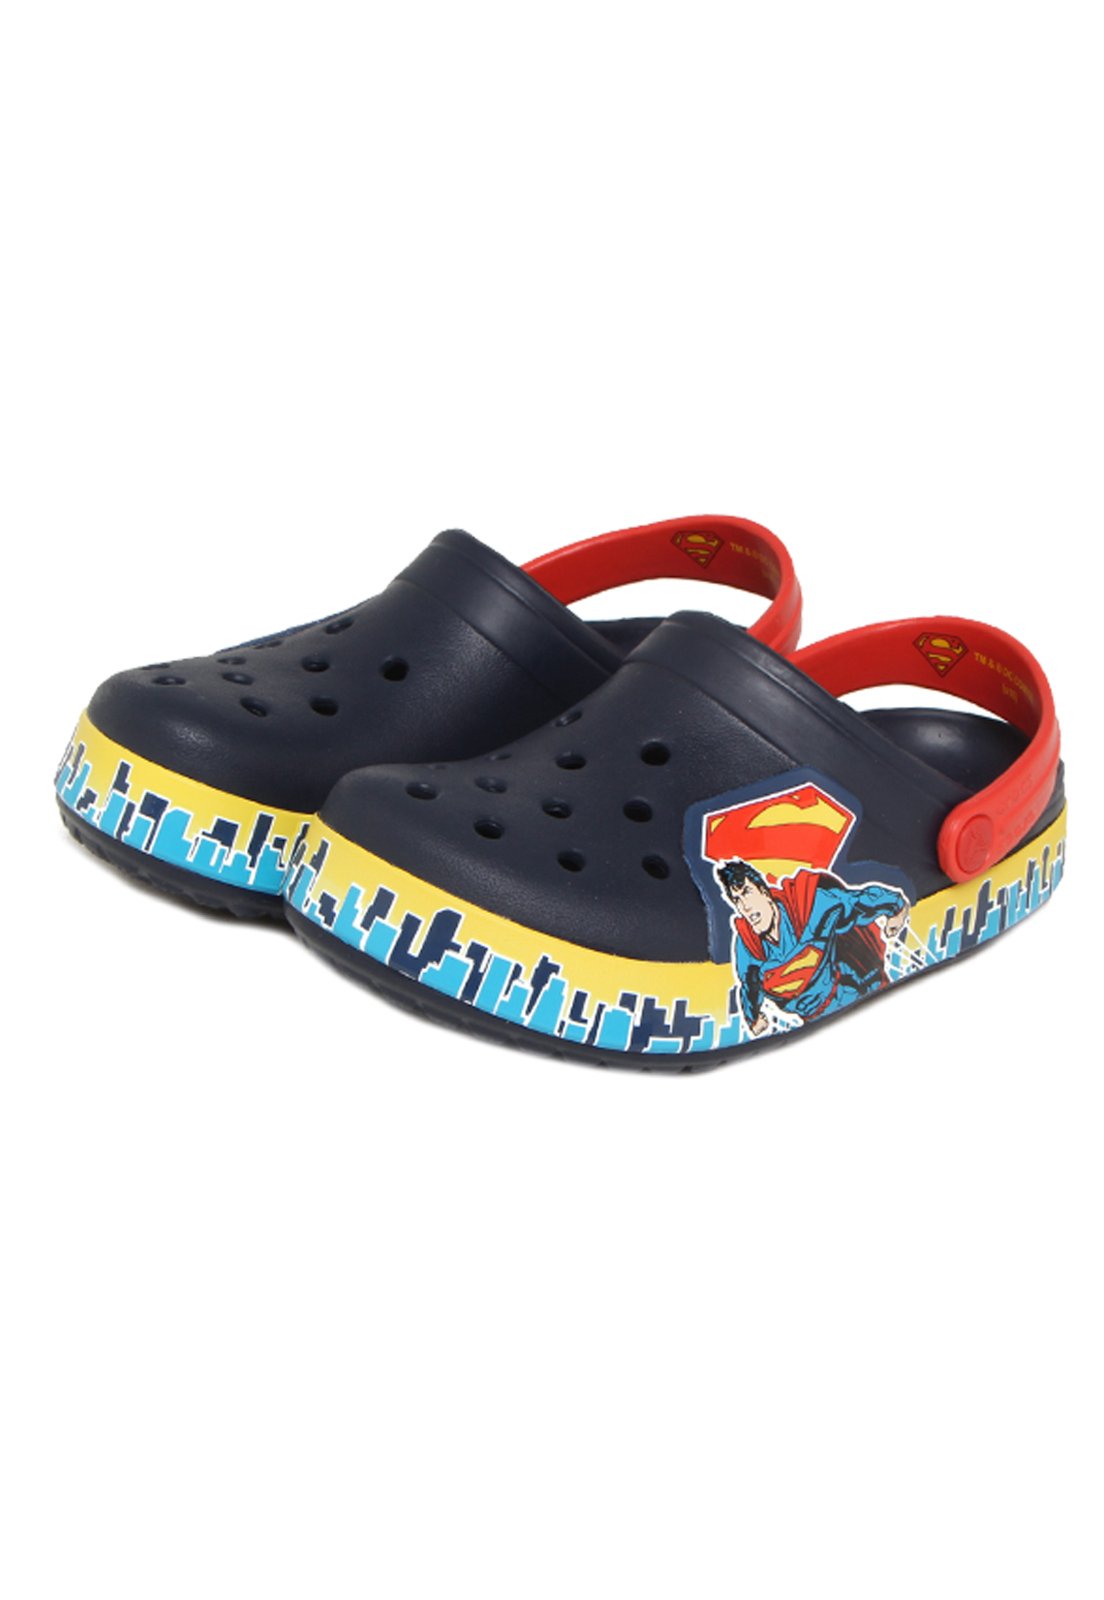 sandalia crocs masculina infantil